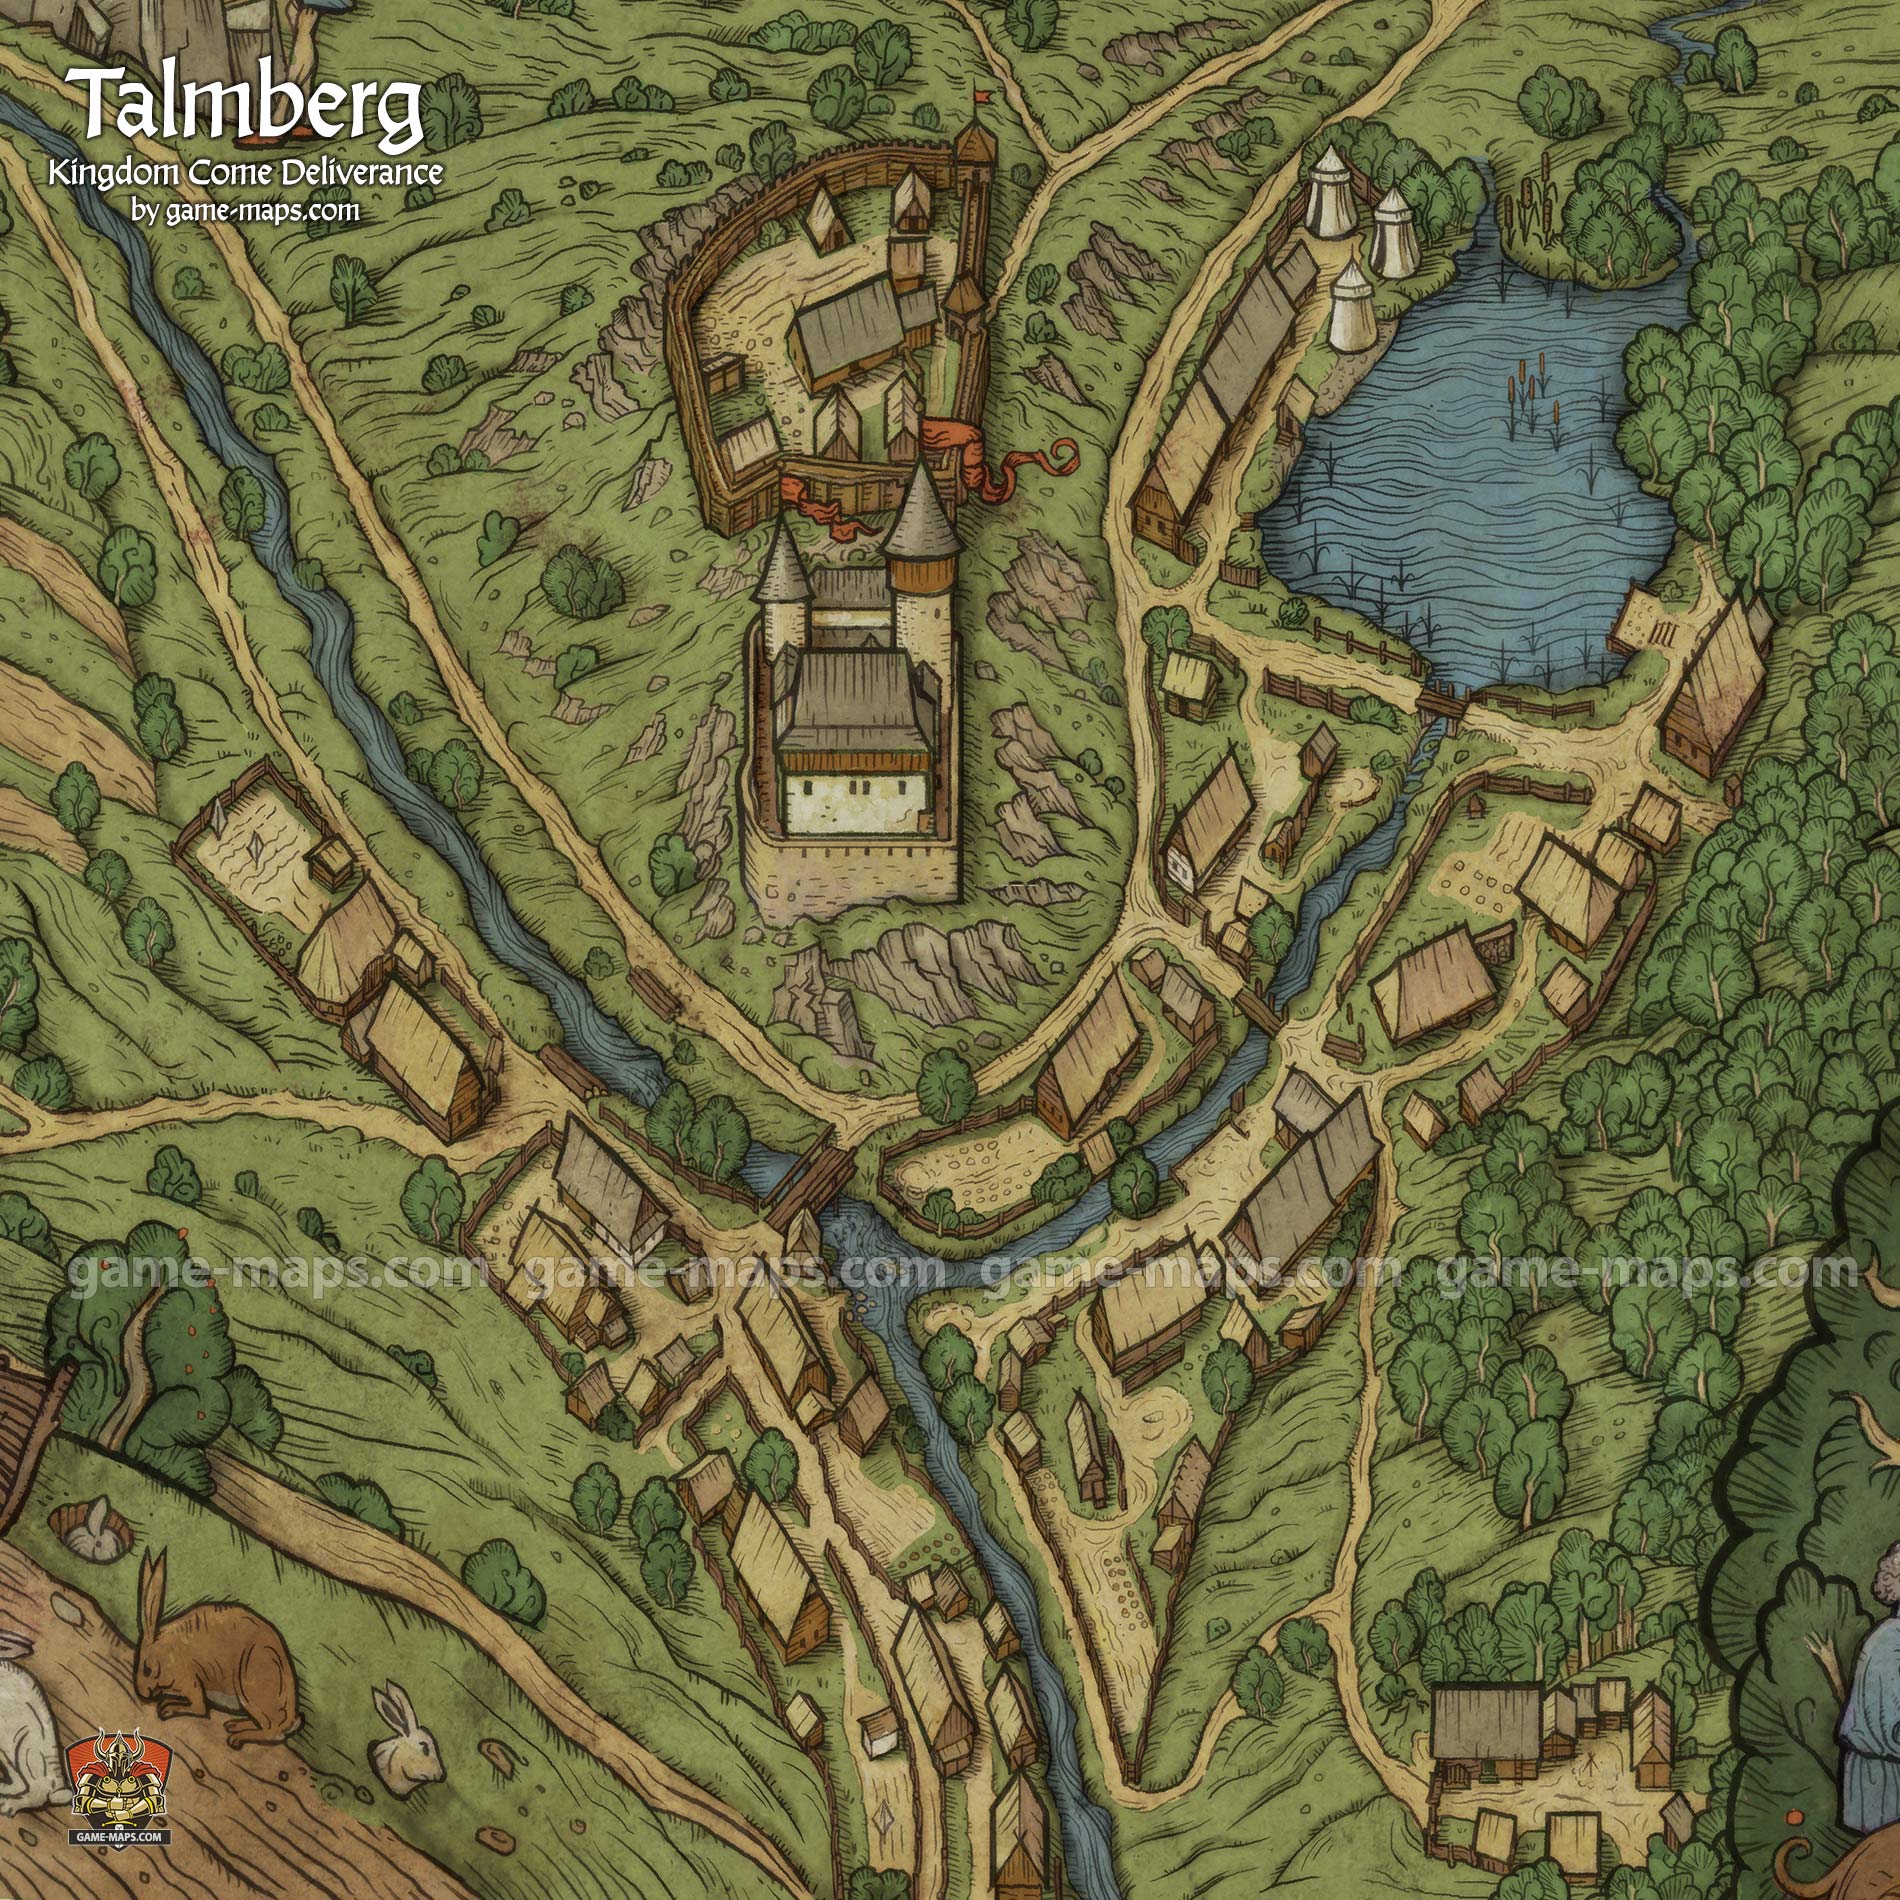 Talmberg Map for Kingdom Come Deliverance